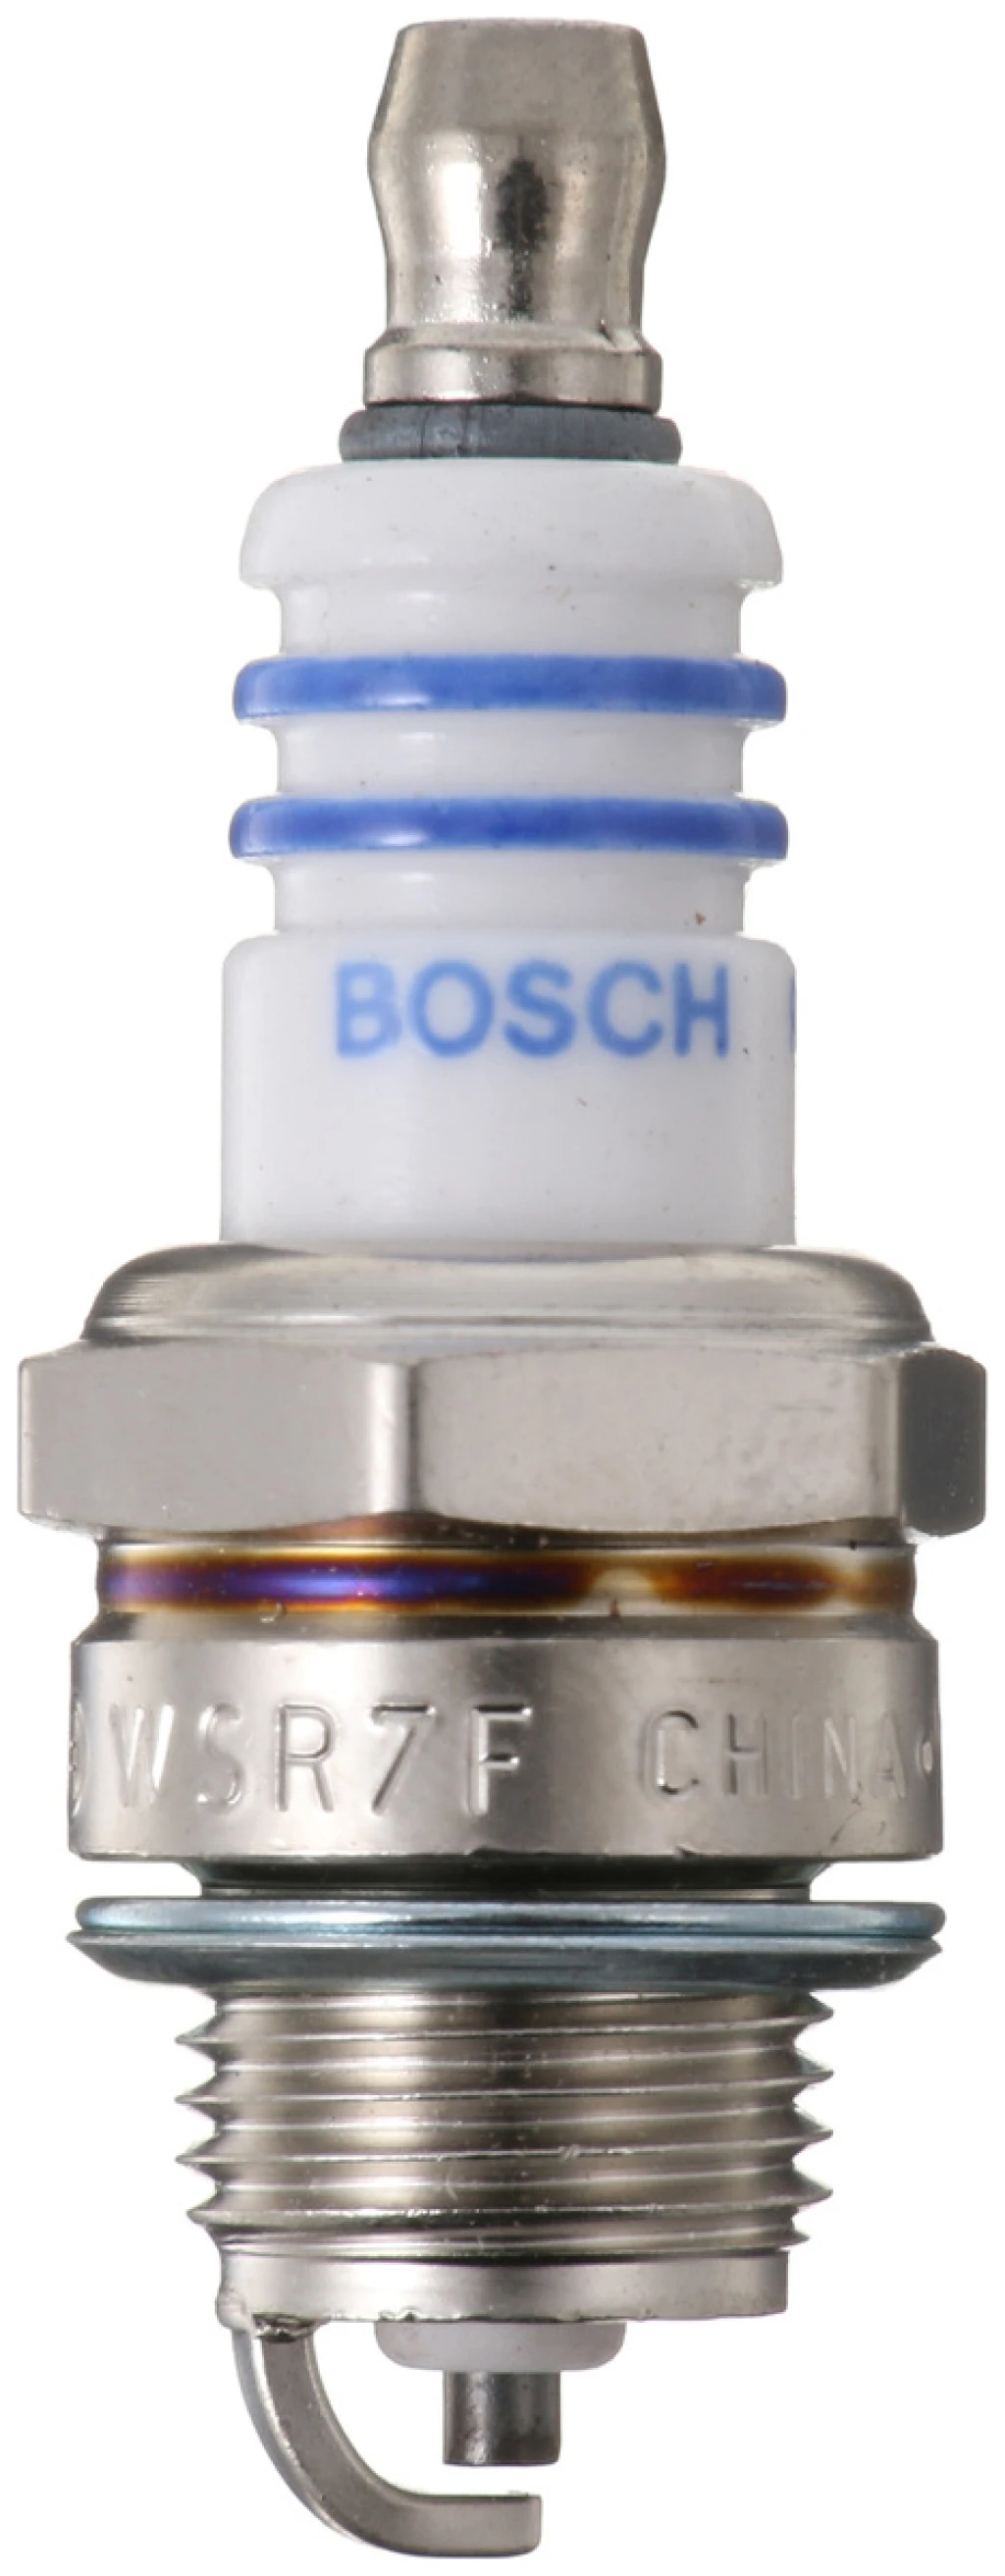 Свеча зажигания Bosch 0 242 235 651 (WSR7F 0.5)